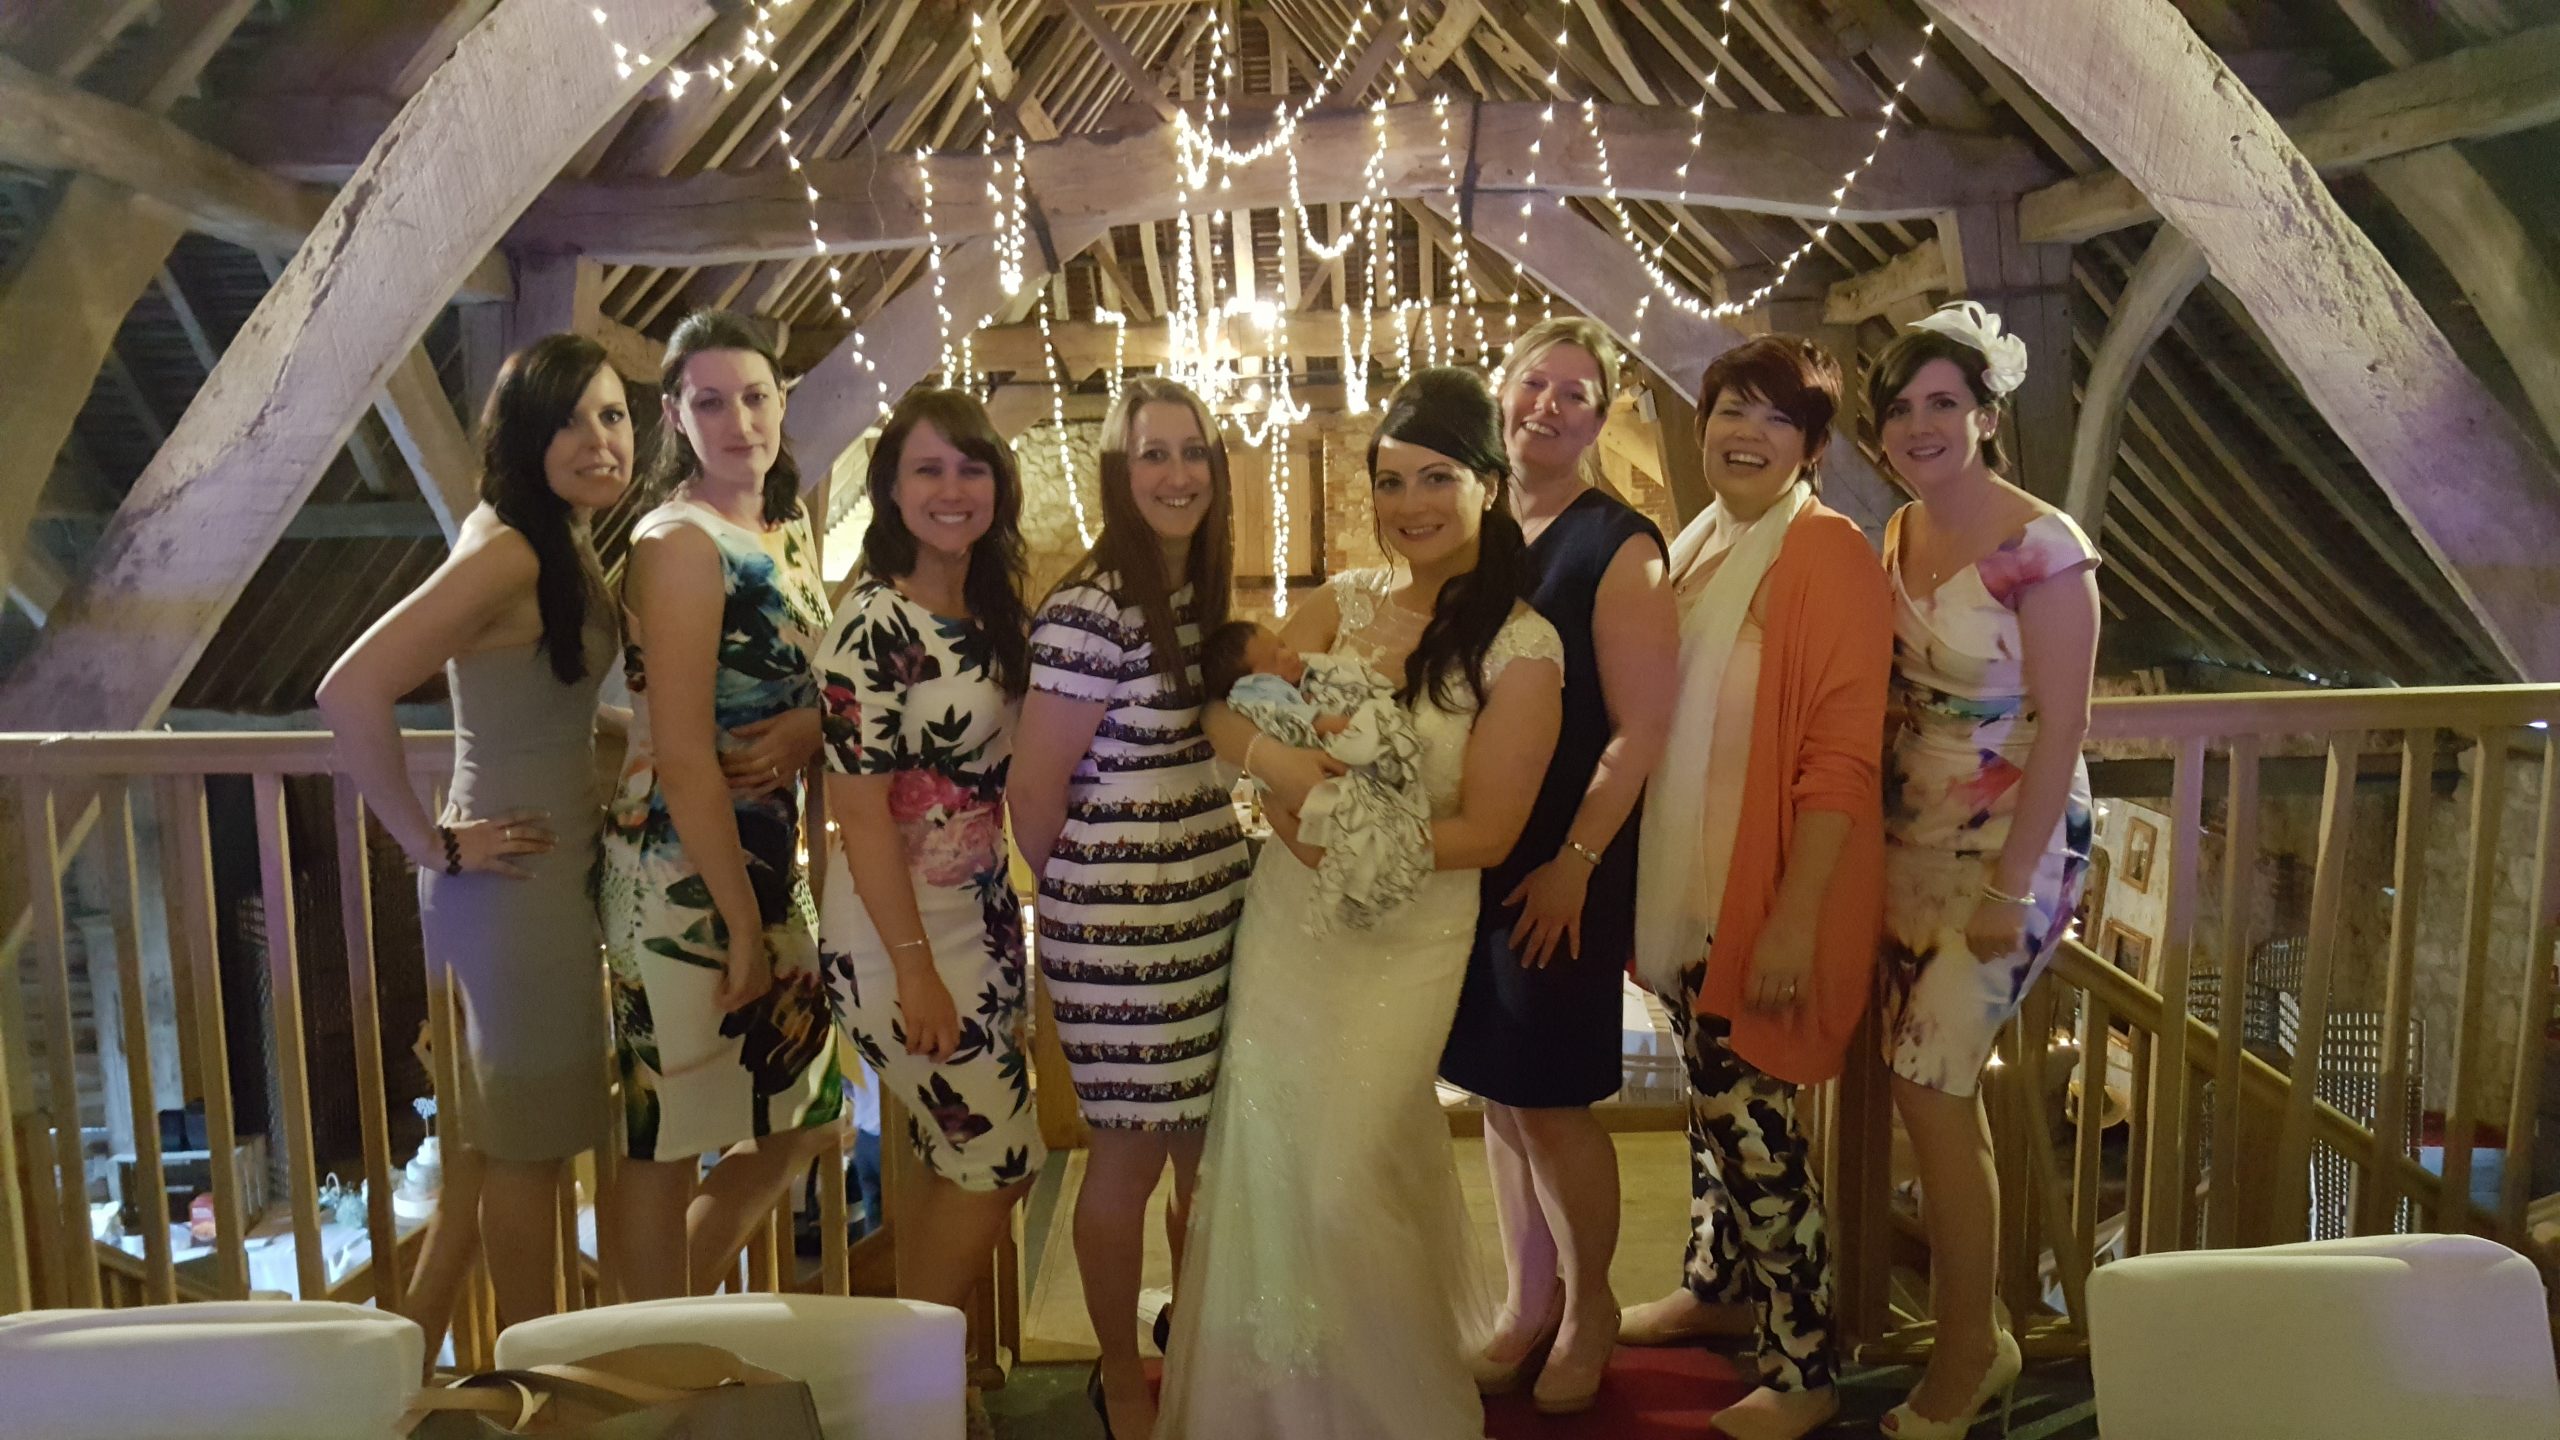 Group of ladies at wedding